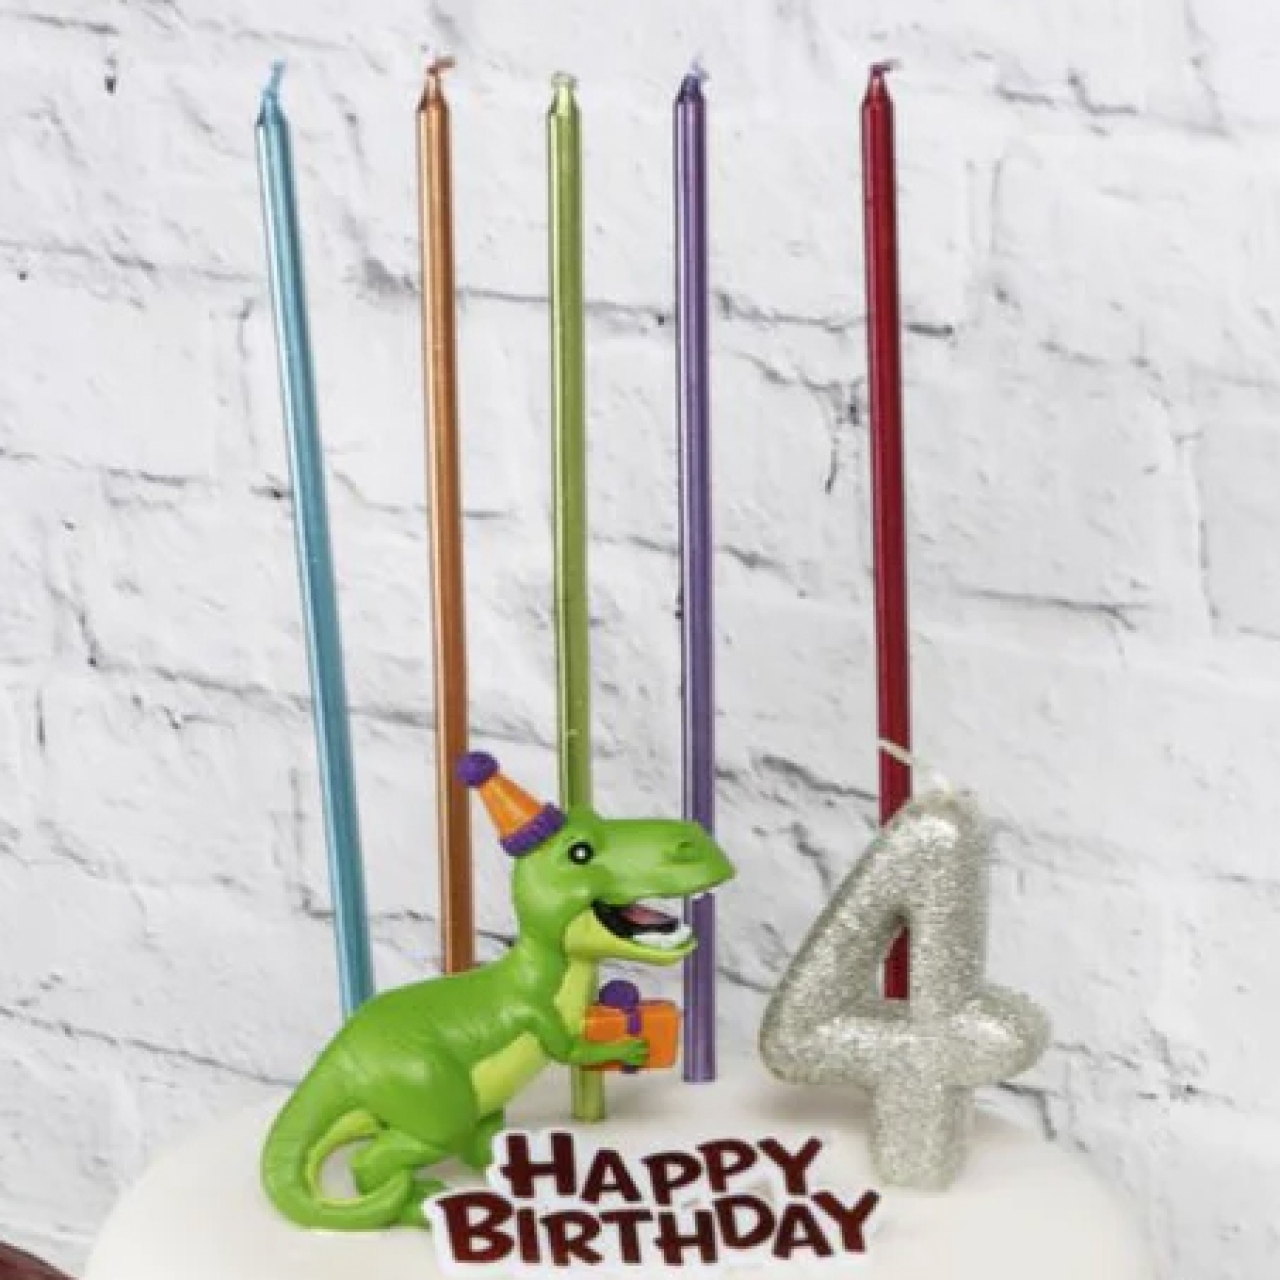 Tortendeko-Set "Dino" für Geburtstagstorten